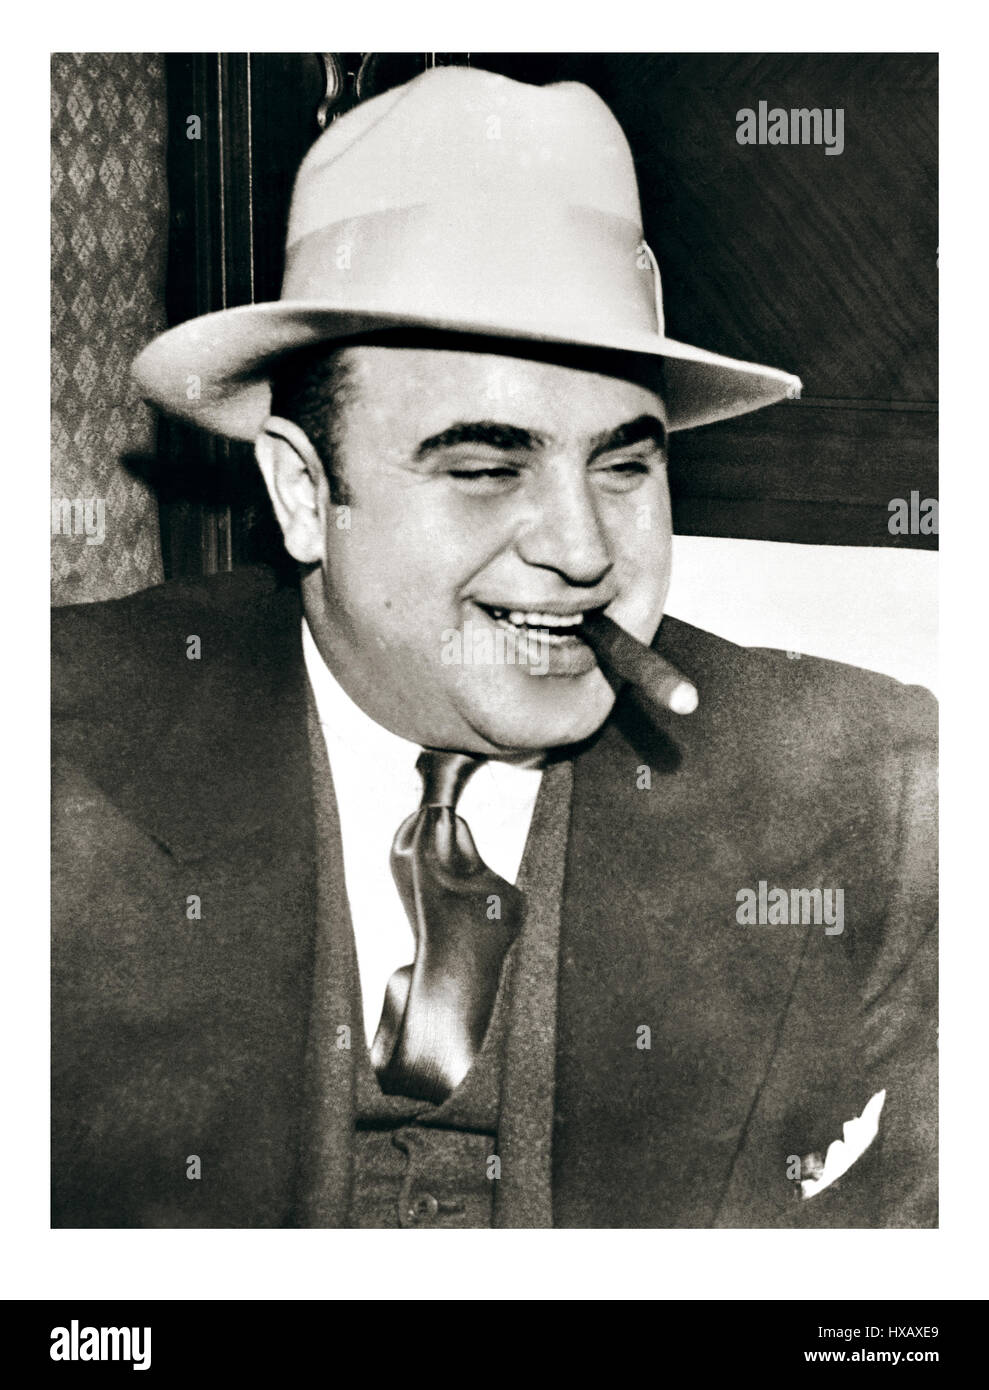 AL CAPONE SIGARO HAT 1920's Vintage B&W immagine di Al Capone, probabilmente la più famosa la criminalità organizzata signore, o più comunemente noto come mafia gangster, negli anni venti della storia americana. Al Capone, byname di Alphonse Capone, chiamato anche Scarface, (nato il 17 gennaio 1899, Brooklyn, New York, Stati Uniti-morì gennaio 25, 1947, Palm Island, Florida), il più famoso gangster americano, che ha dominato la criminalità organizzata a Chicago dal 1925 al 1931. Foto Stock